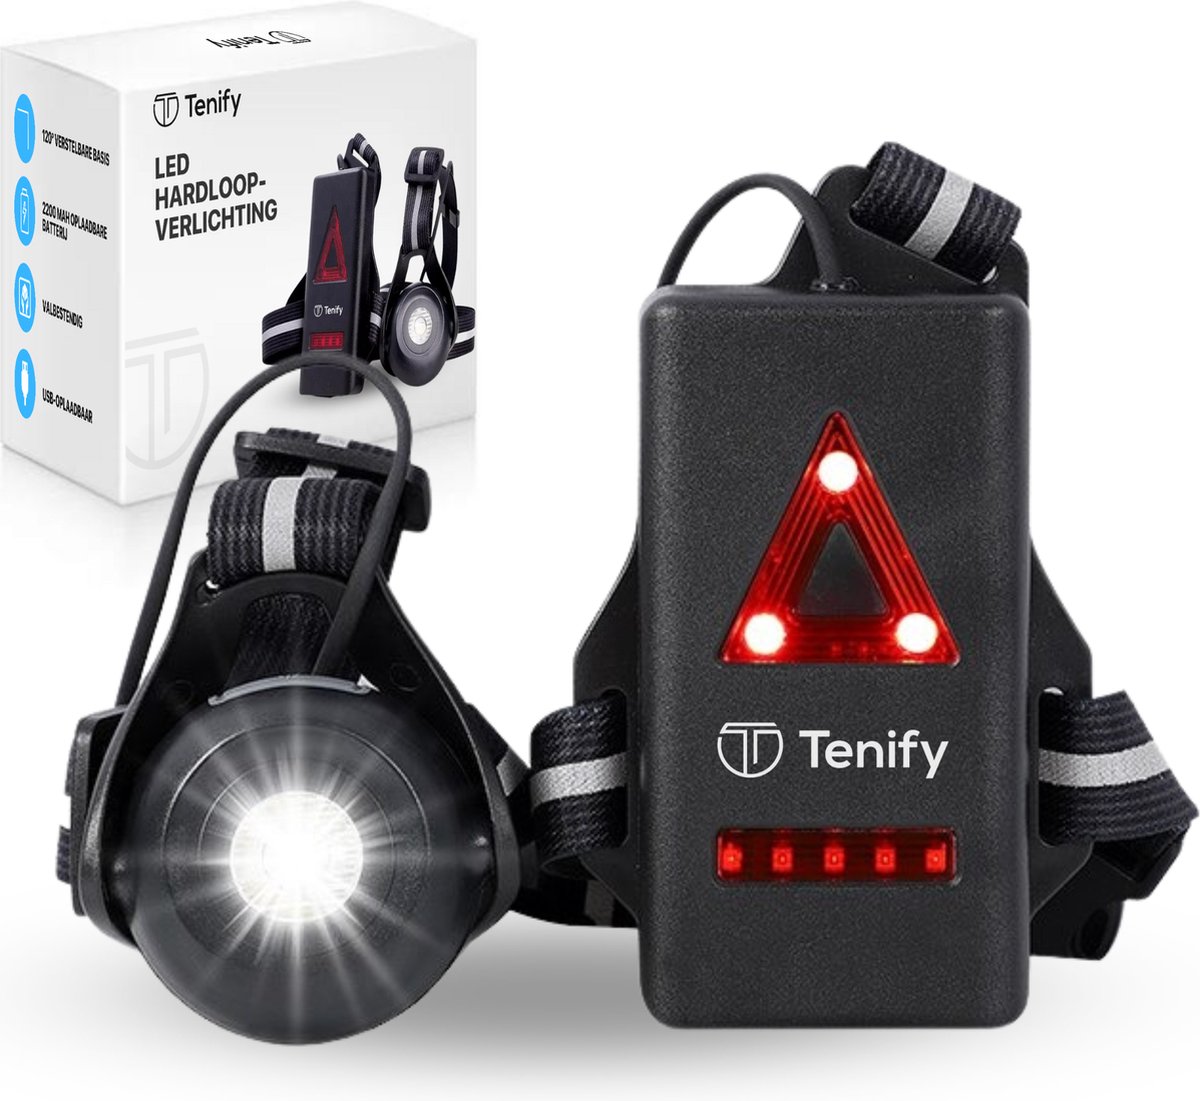 Tenify LED Hardloop Verlichting - USB Oplaadbaar - Verstelbaar - Reflecterend - Voor en Achter - Hardloopvest - Borstlamp - Vest - Lichtjes - Wandel Lampjes